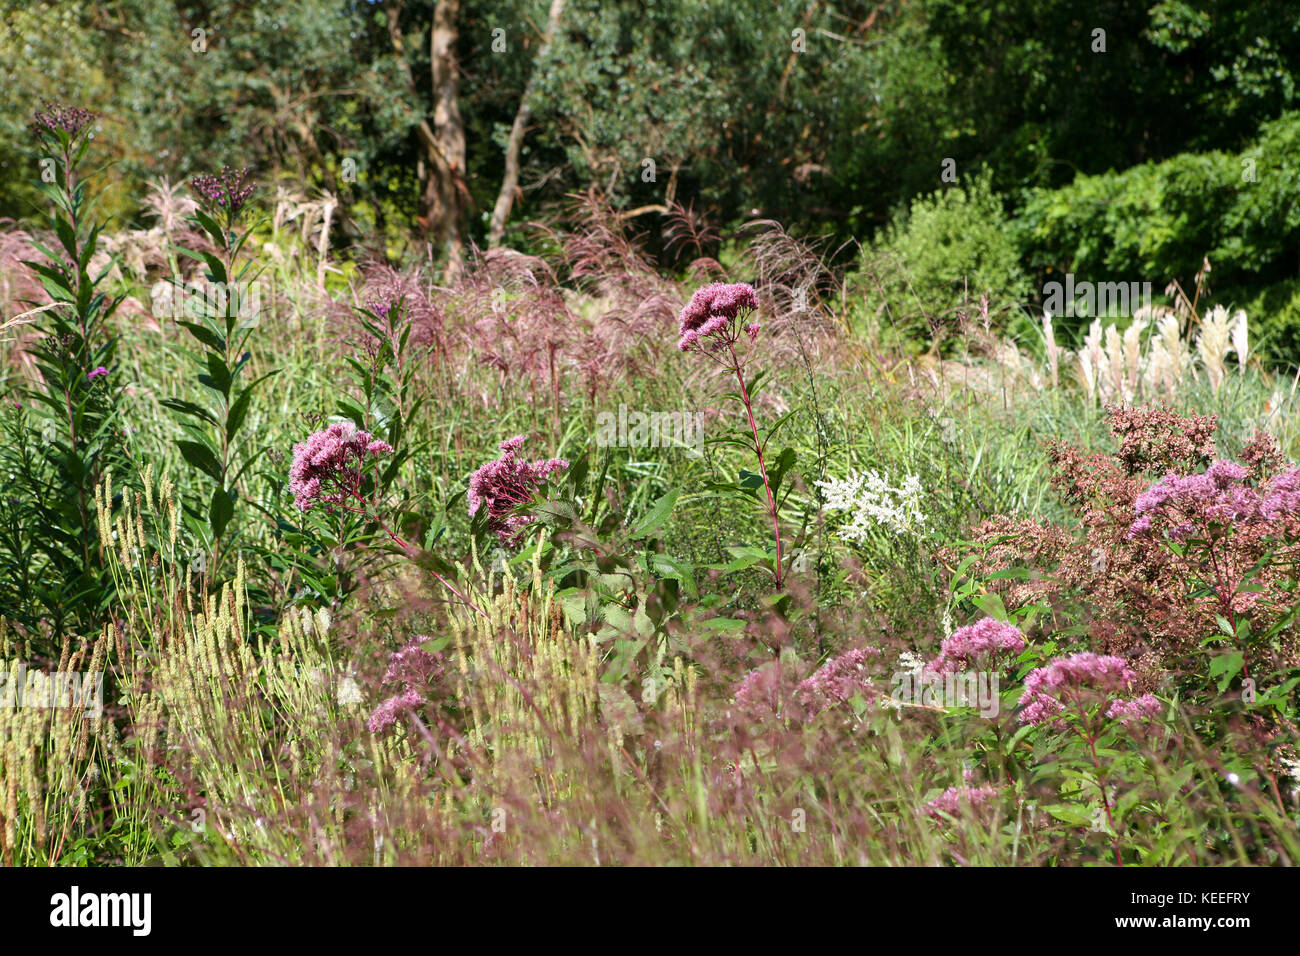 Tarda estate perenne schema di impianto, con Eupatorium, Sanguisorba, Miscanthus, presso Knoll Gardens, Regno Unito Foto Stock